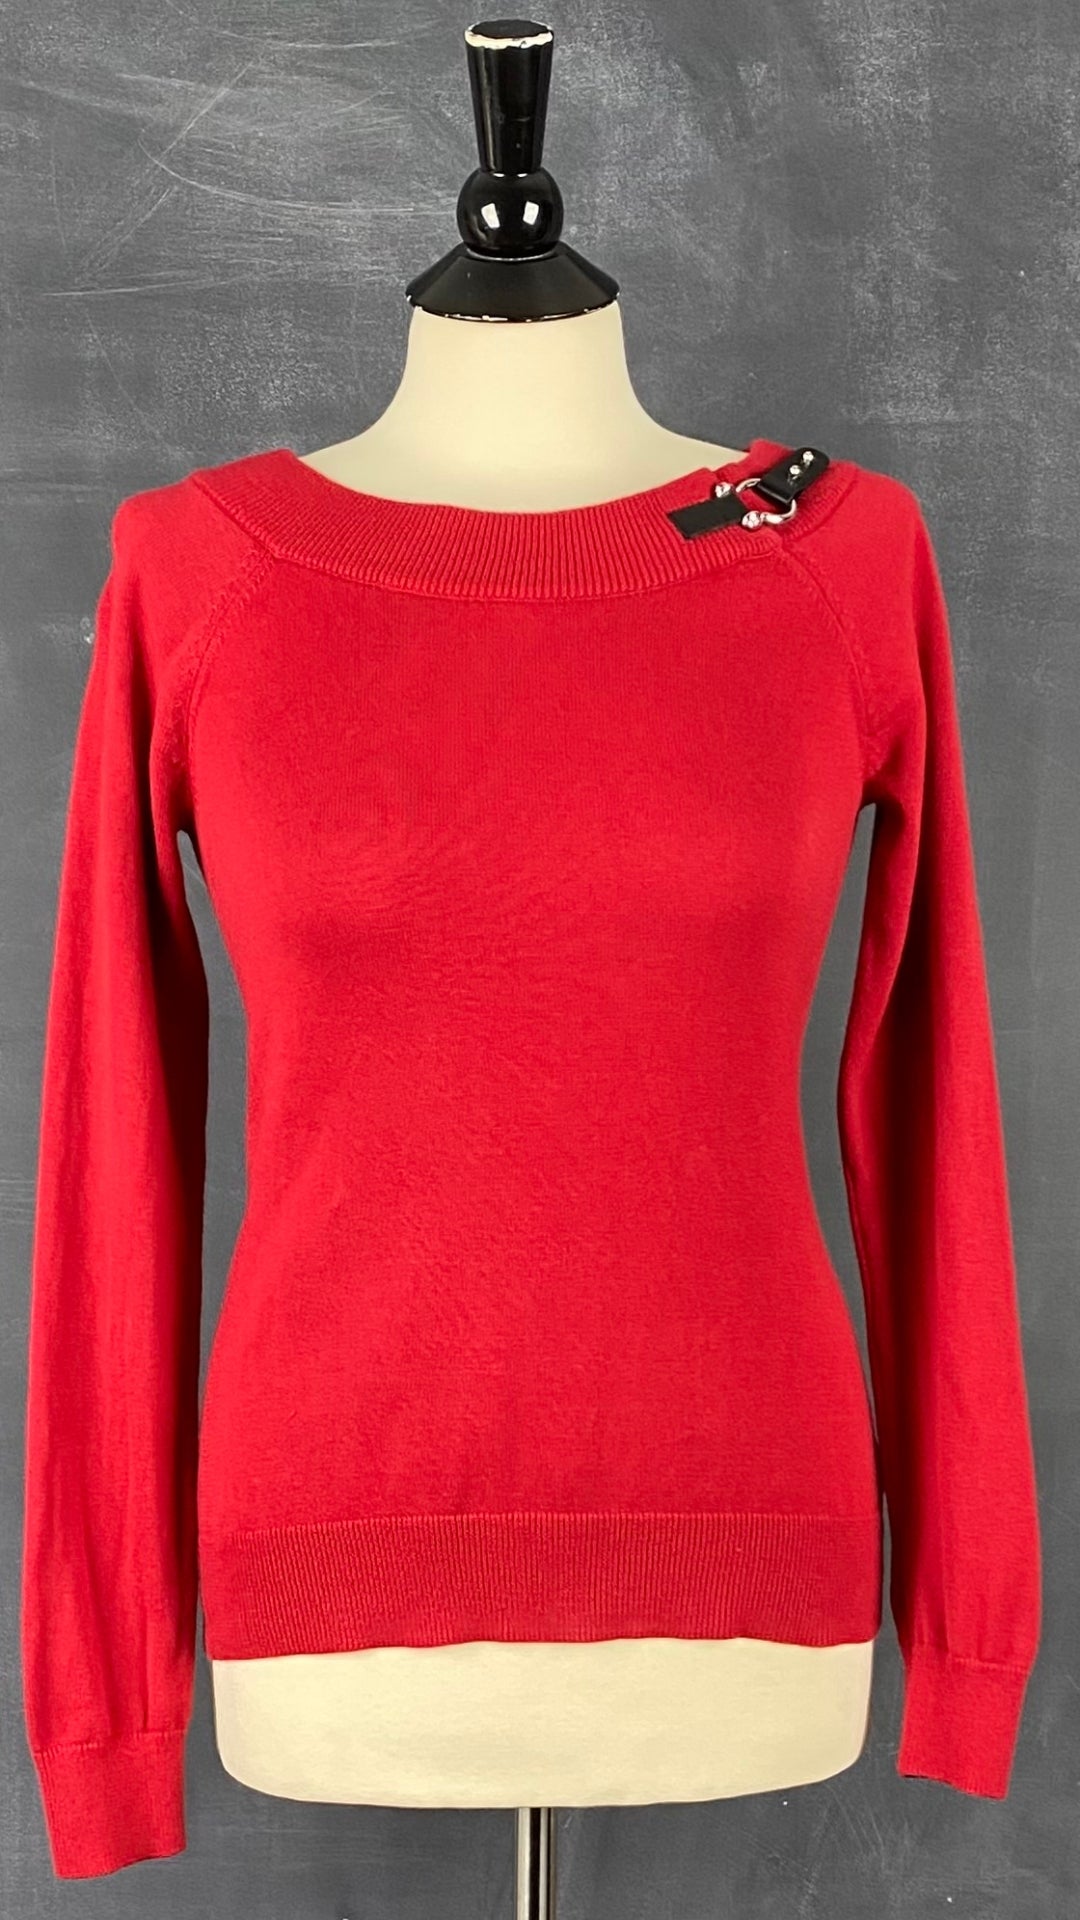 Chandail en tricot rouge col bateau Lauren Ralph Lauren, taille small. Vue de face.